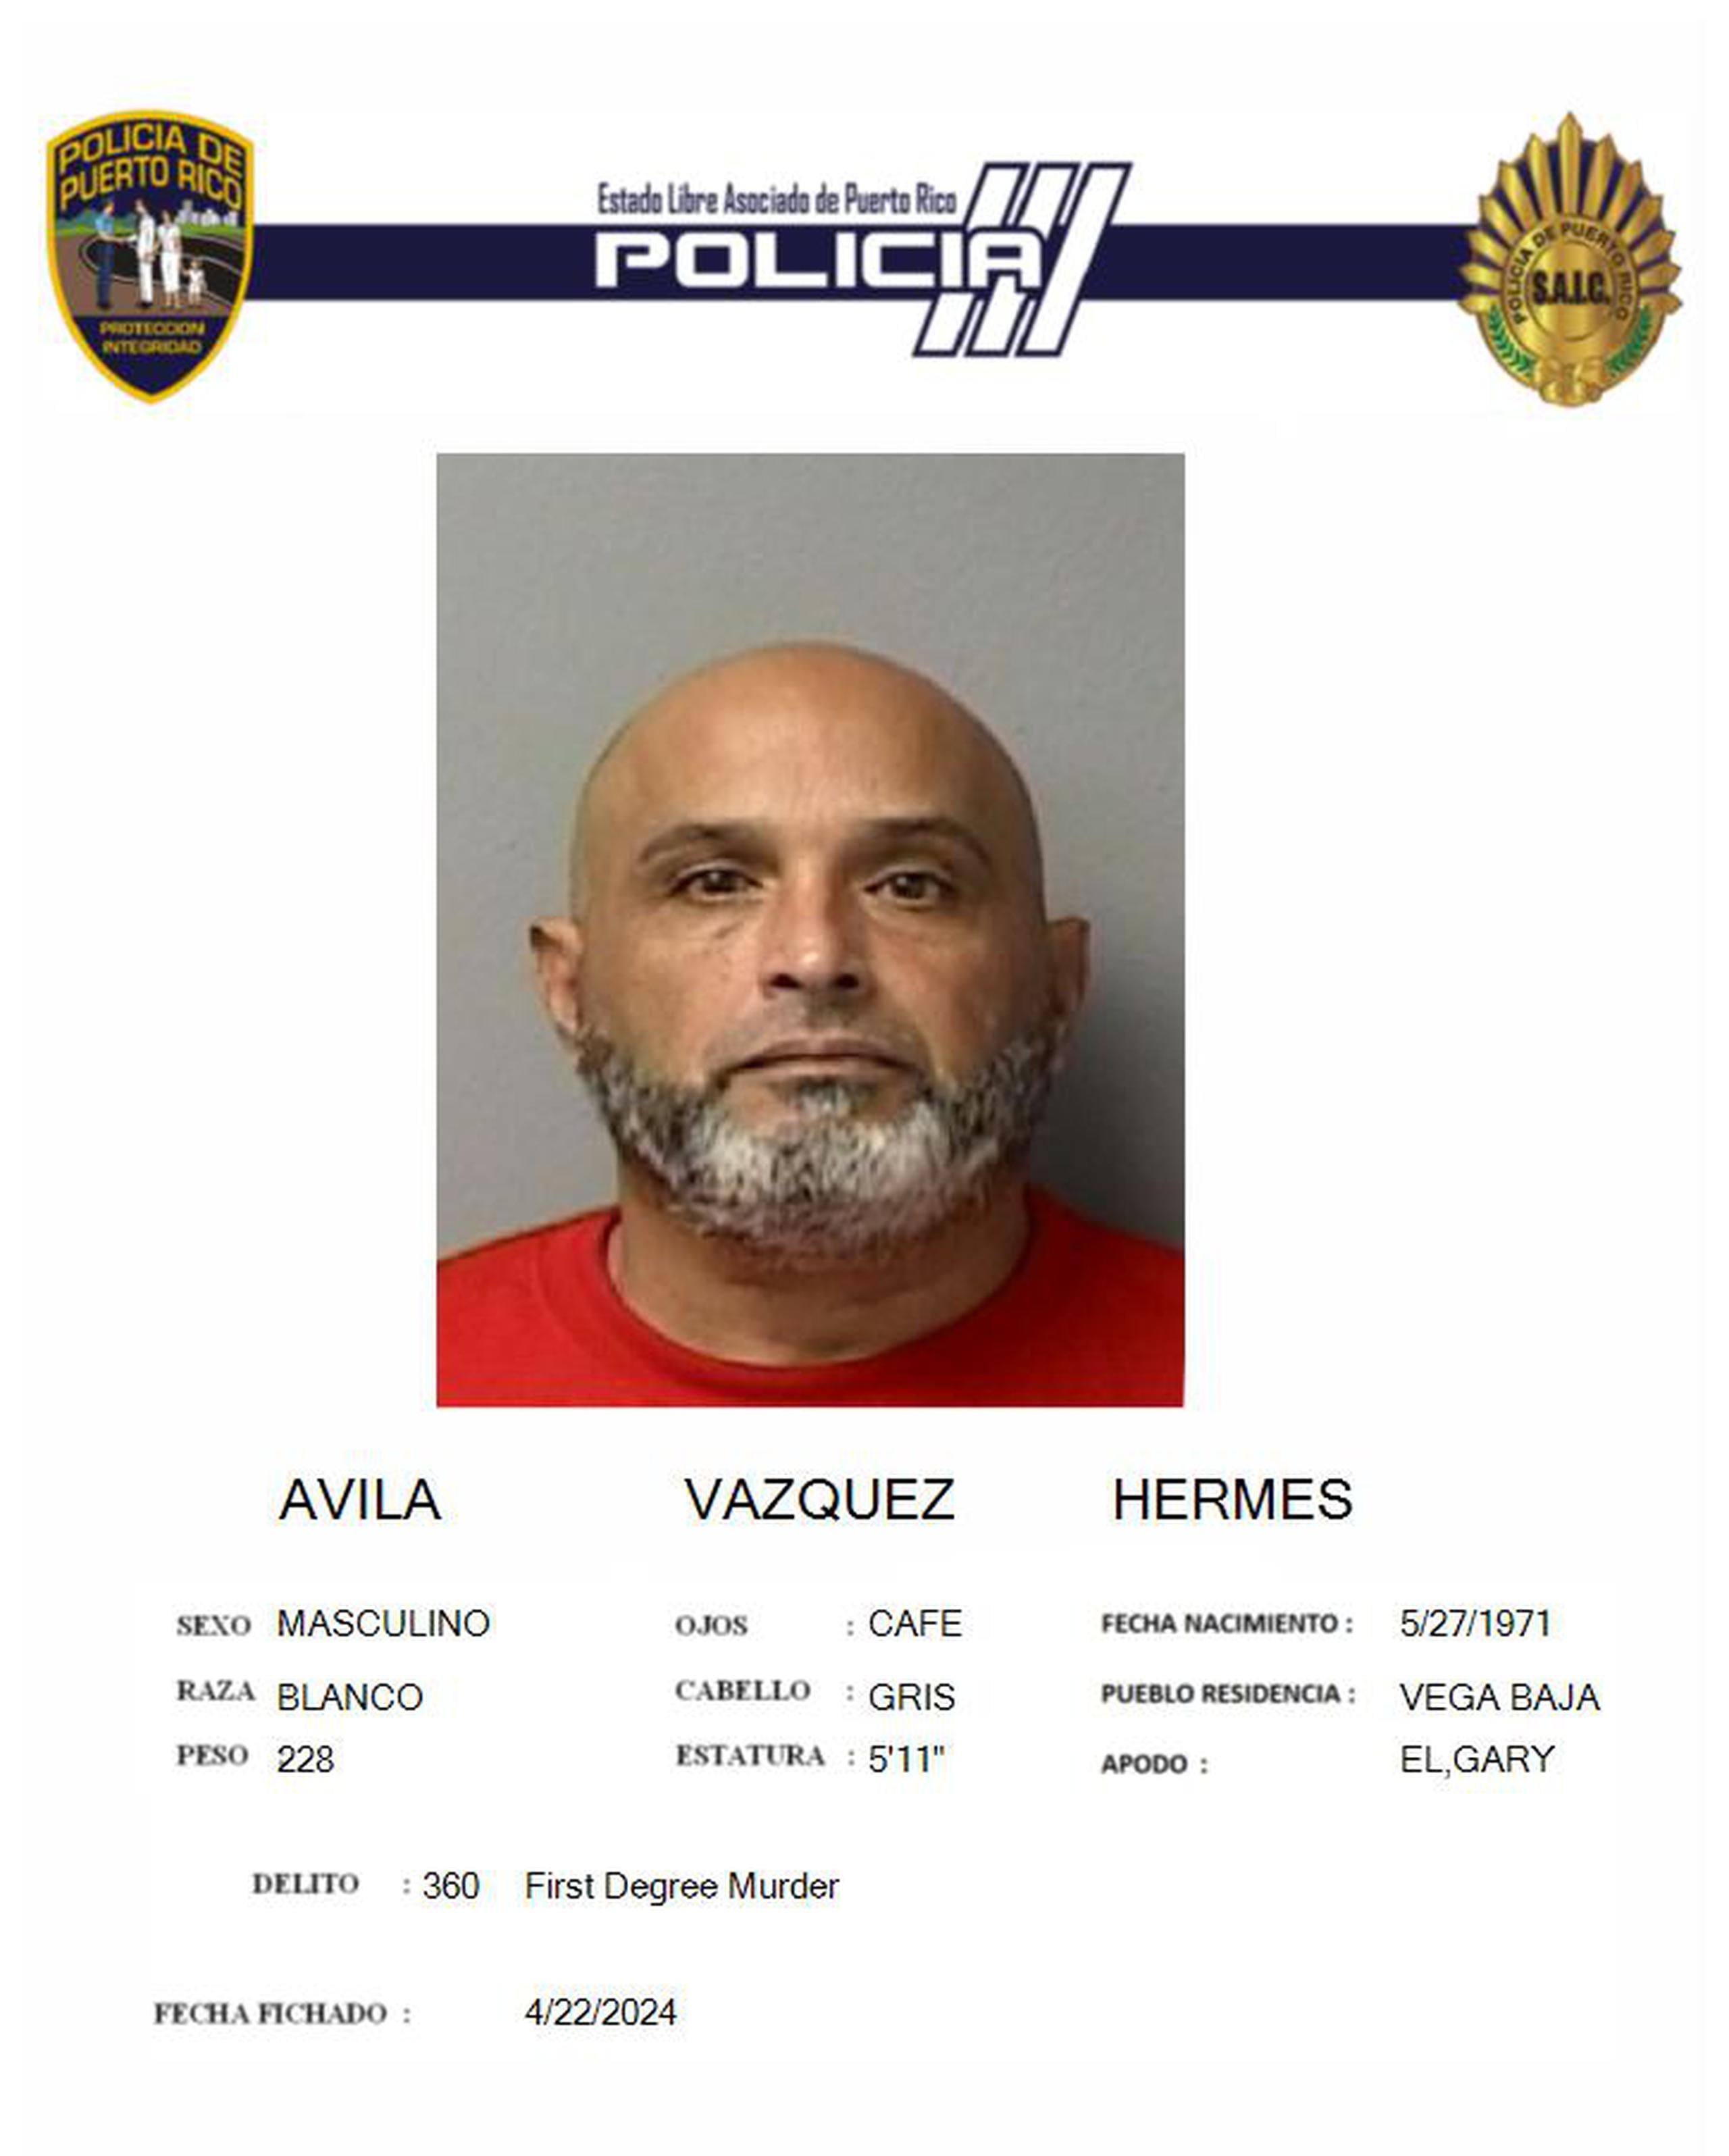 Hermes Ávila Vázquez enfrenta cargos de feminicidio, hurto de un vehículo, destrucción de evidencia y posesión de un arma blanca.